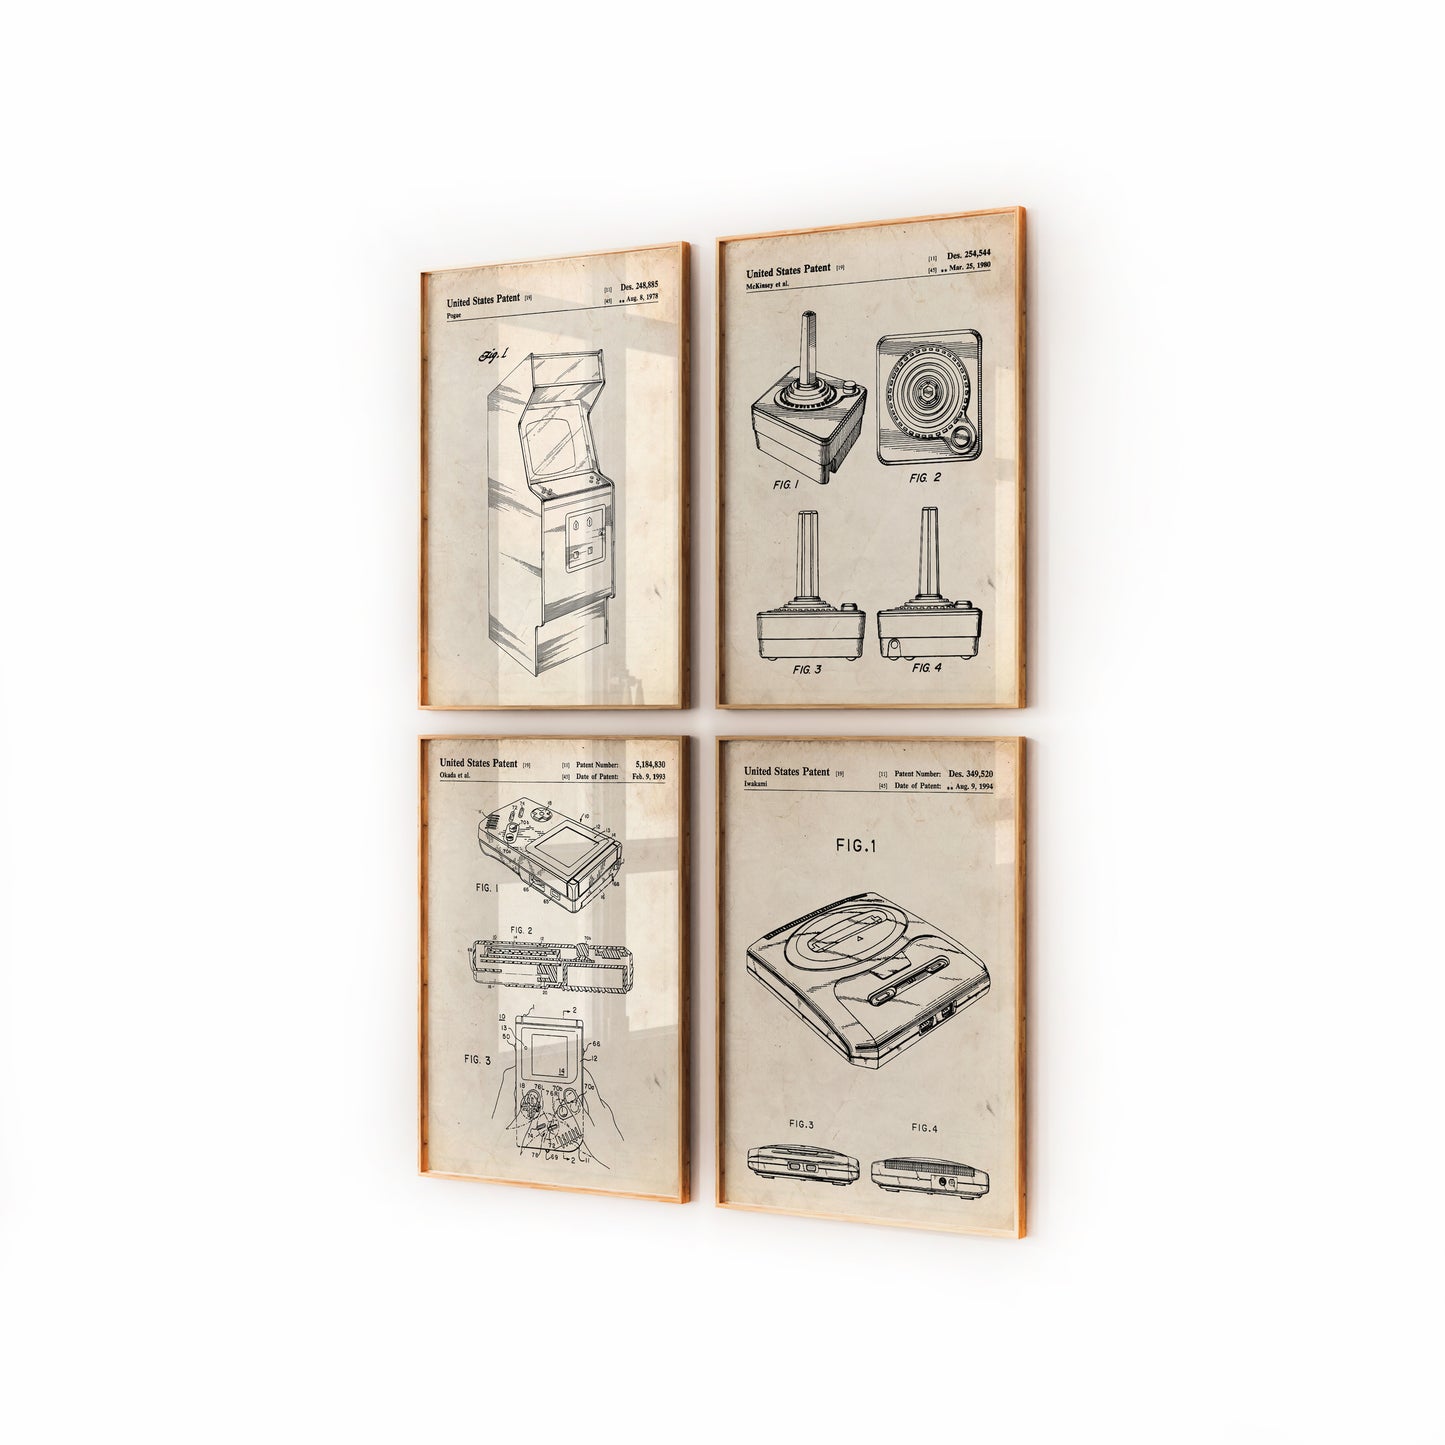 Gaming Set Of 4 Patent Prints - Magic Posters